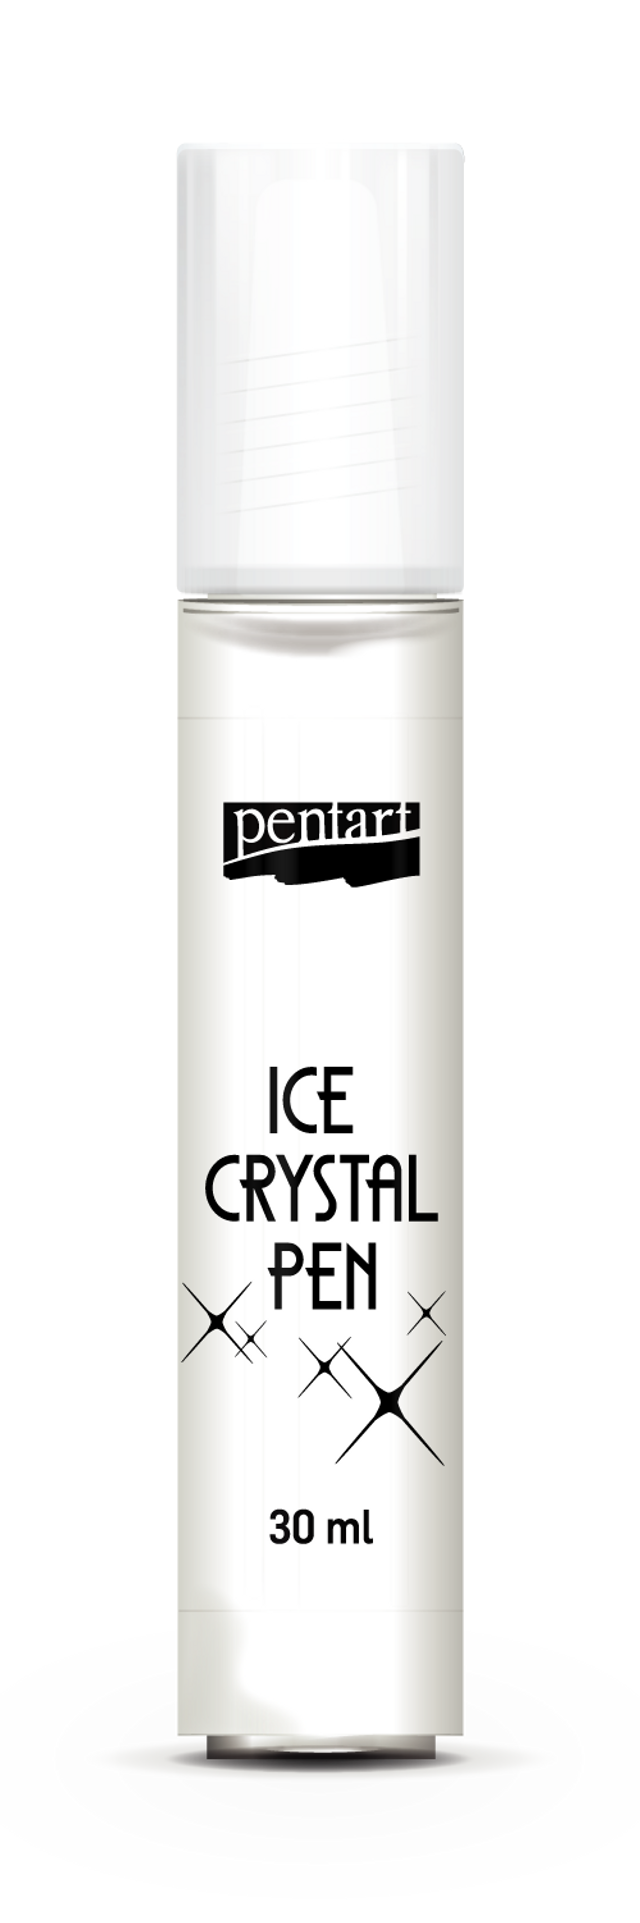 Pentart ICE Crystal Pen - Decoupage Queen